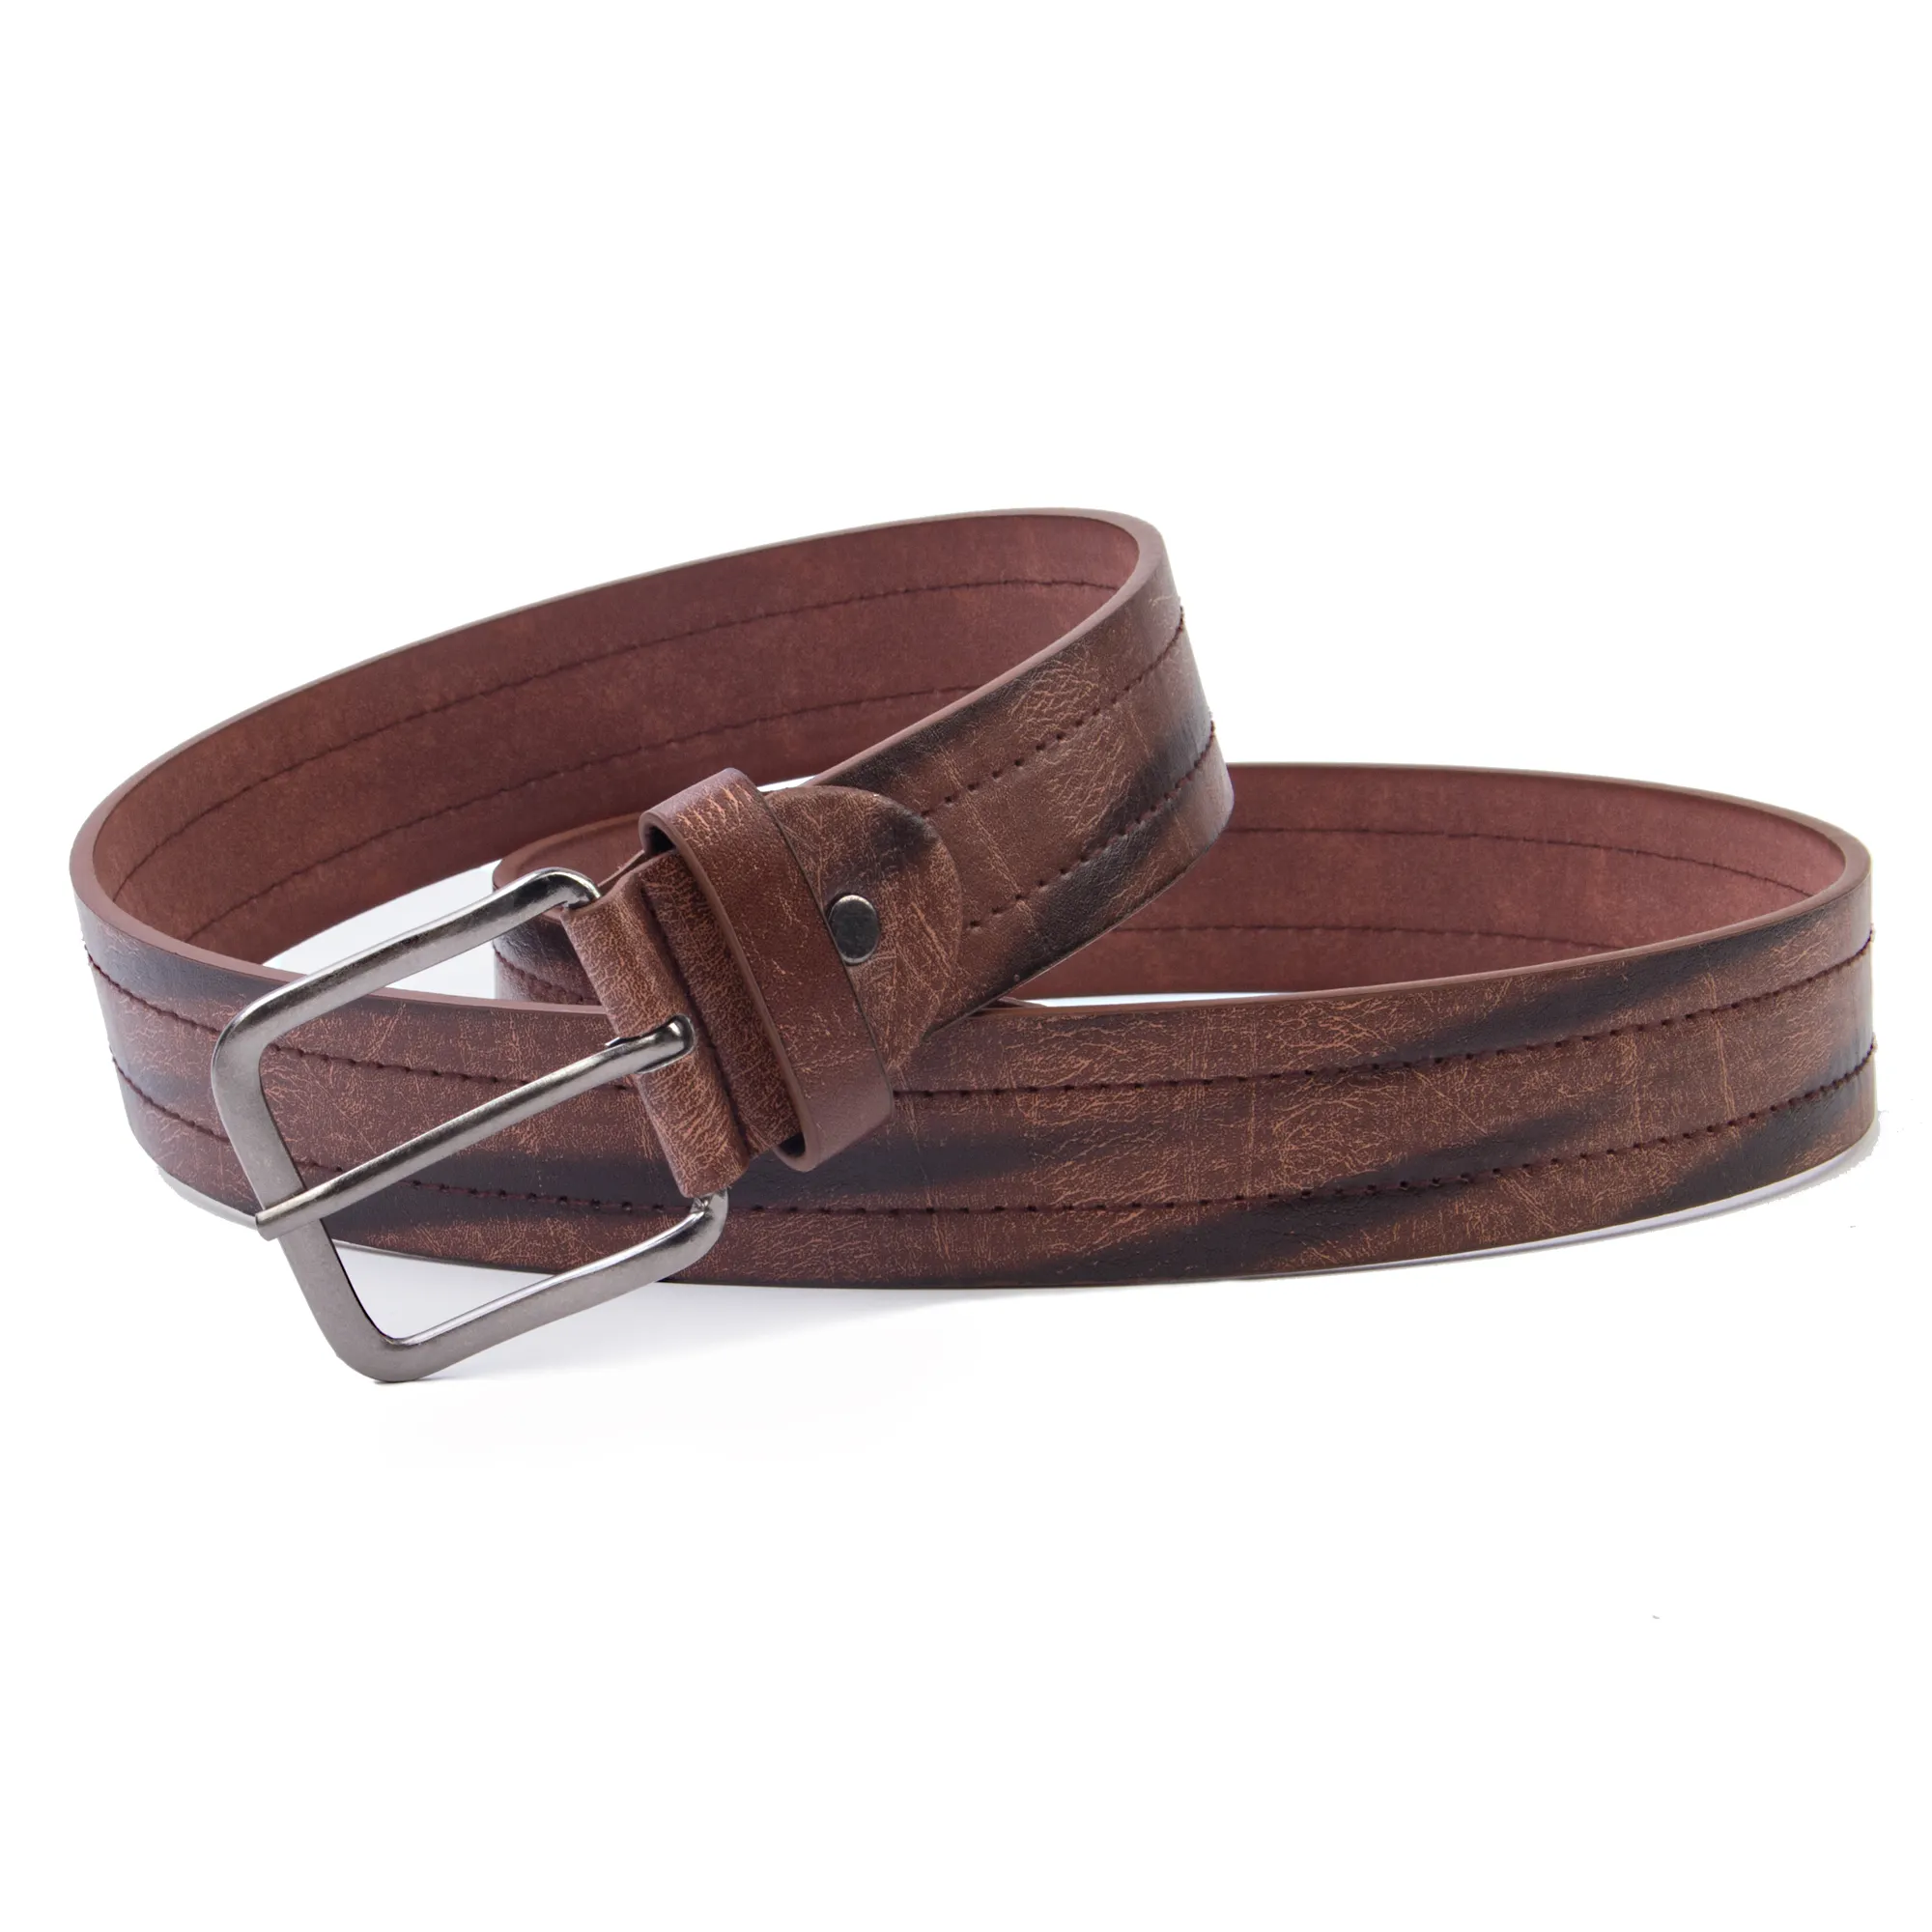 Precio barato, cinturón de cuero personalizado para hombres, cinturones estampados de moda de lujo informal para hombres